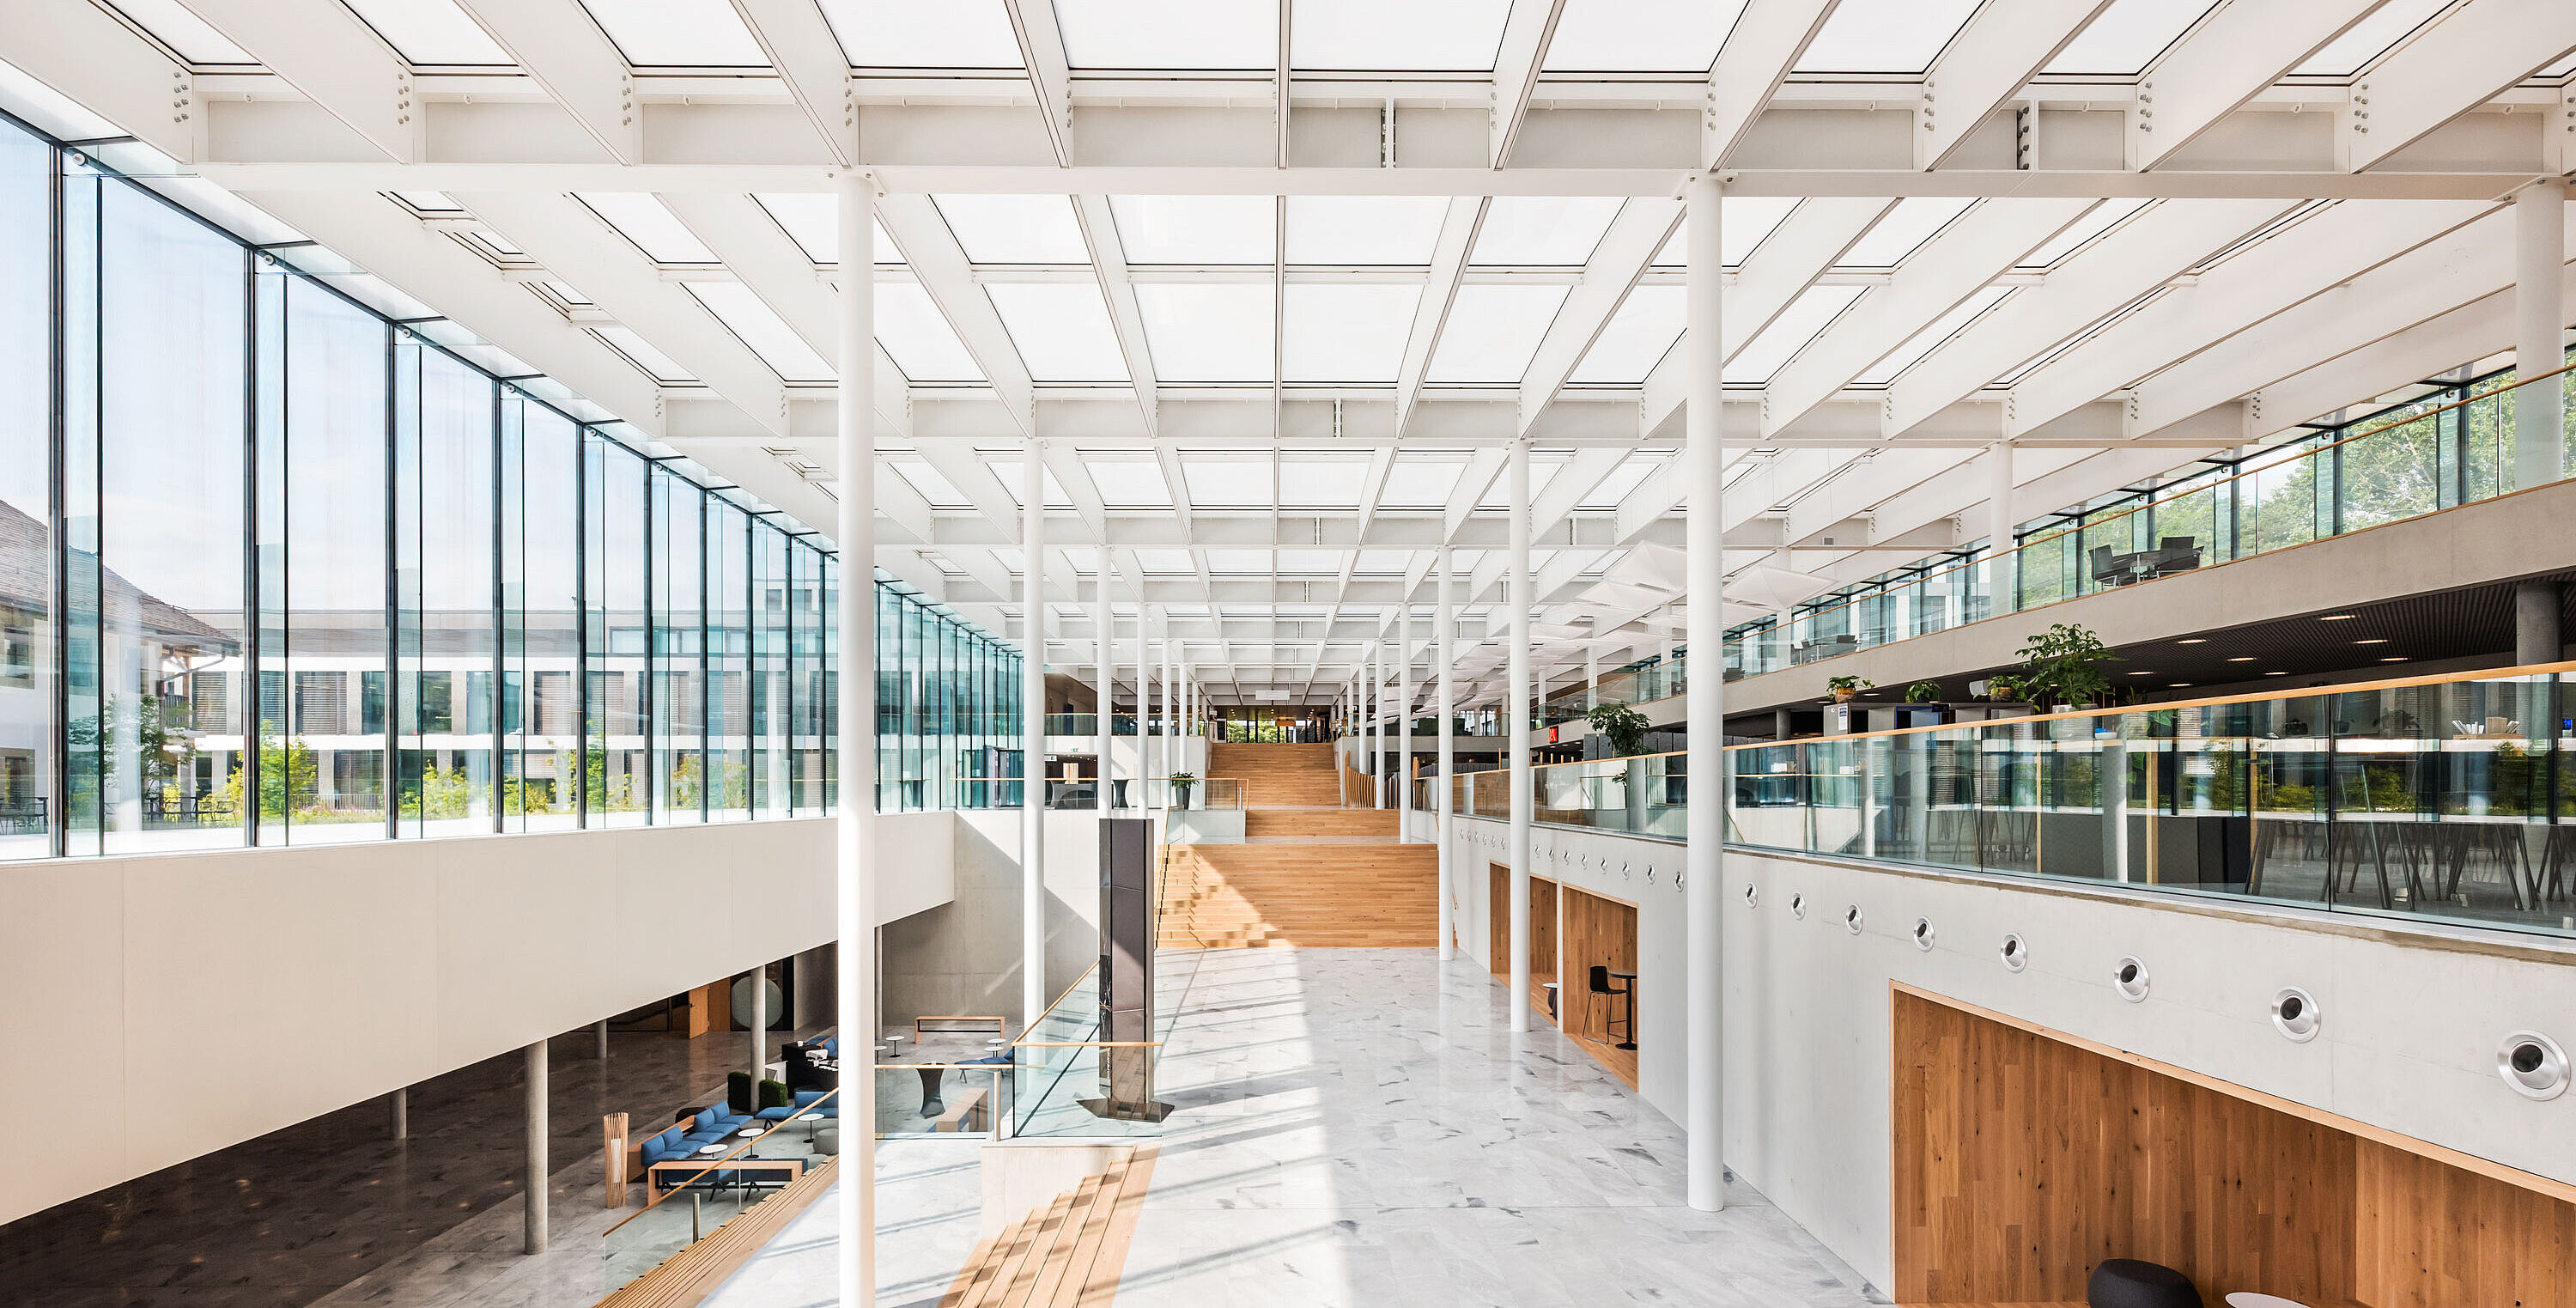 École hôtelière de Lausanne, Lausanne mit Okalux K: Lernen durch Beobachten